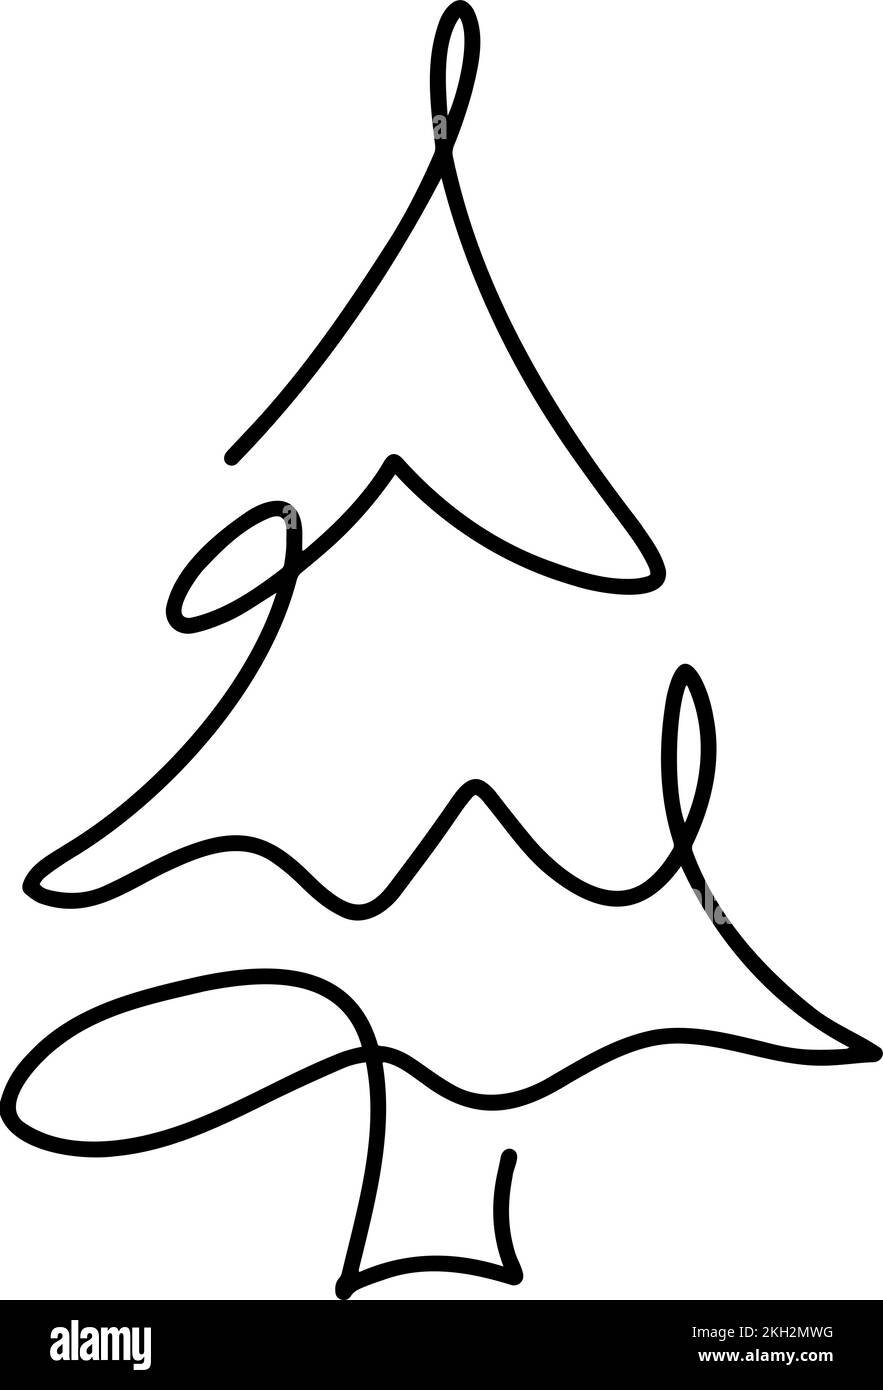 Weihnachtsvektor Kiefer Tanne Linie Kunst. Kontinuierliche eine Linie Zeichnung. Illustration minimalistisches Design für Weihnachten und Neujahr Typ Konzept Stock Vektor